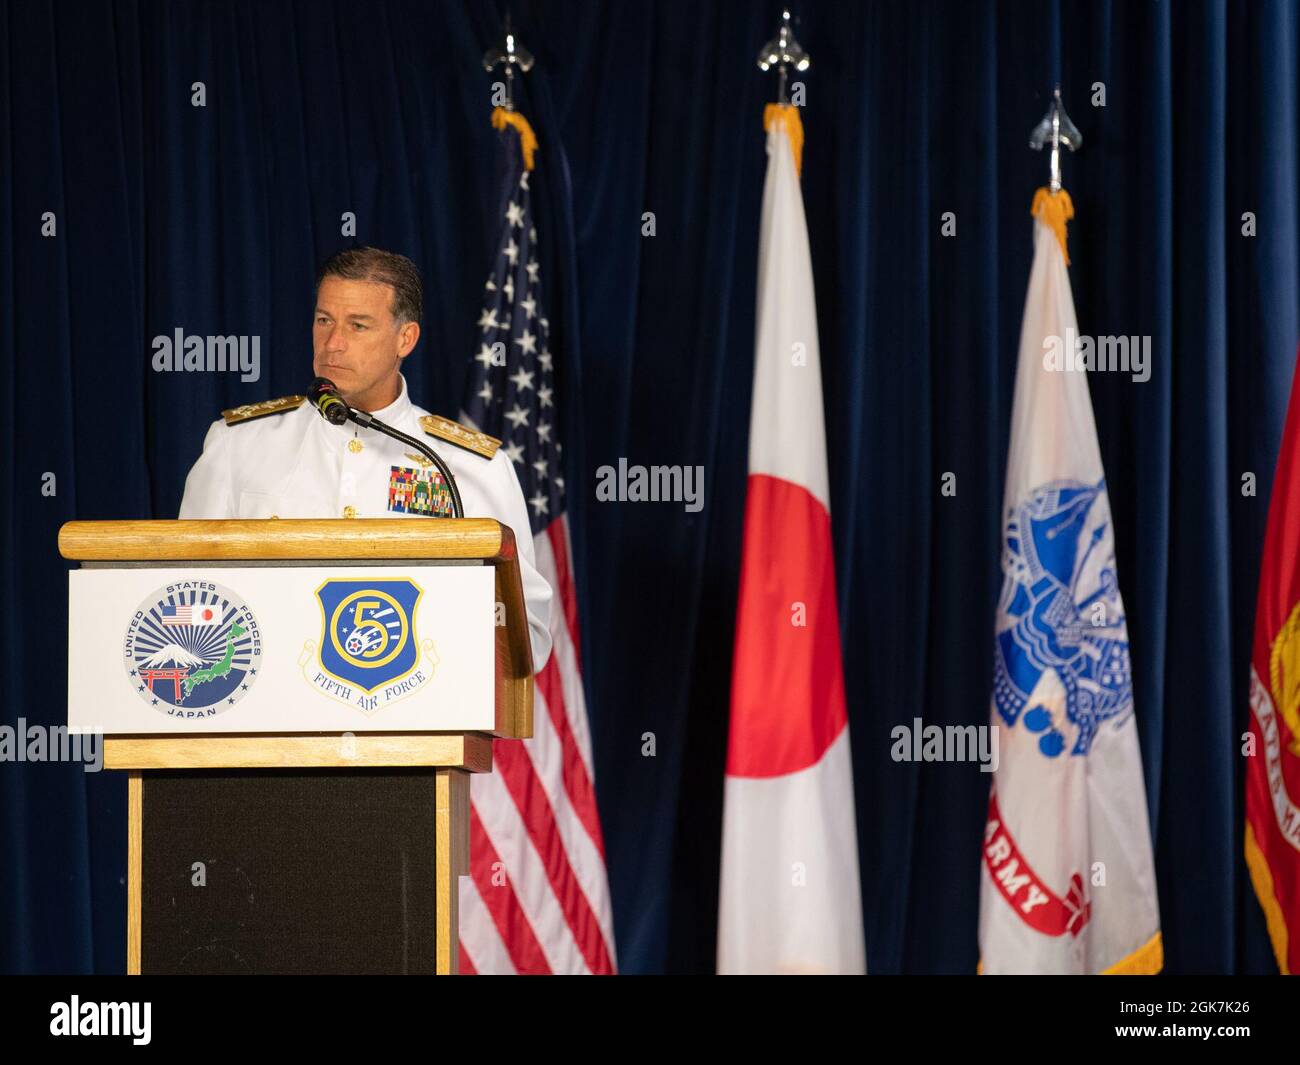 Admiral John C. Aquilino, Kommandant der US-Indo-Pacific Command, spricht während der US-Streitkräfte Japan und der 5. Luftstreitwechsel-Zeremonie auf dem Yokota Air Base, Japan, am 27. August 2021. Aquilino sprach über die Bedeutung des USFJ und des 5. AF im Verantwortungsbereich der Pacific Air Forces. Stockfoto